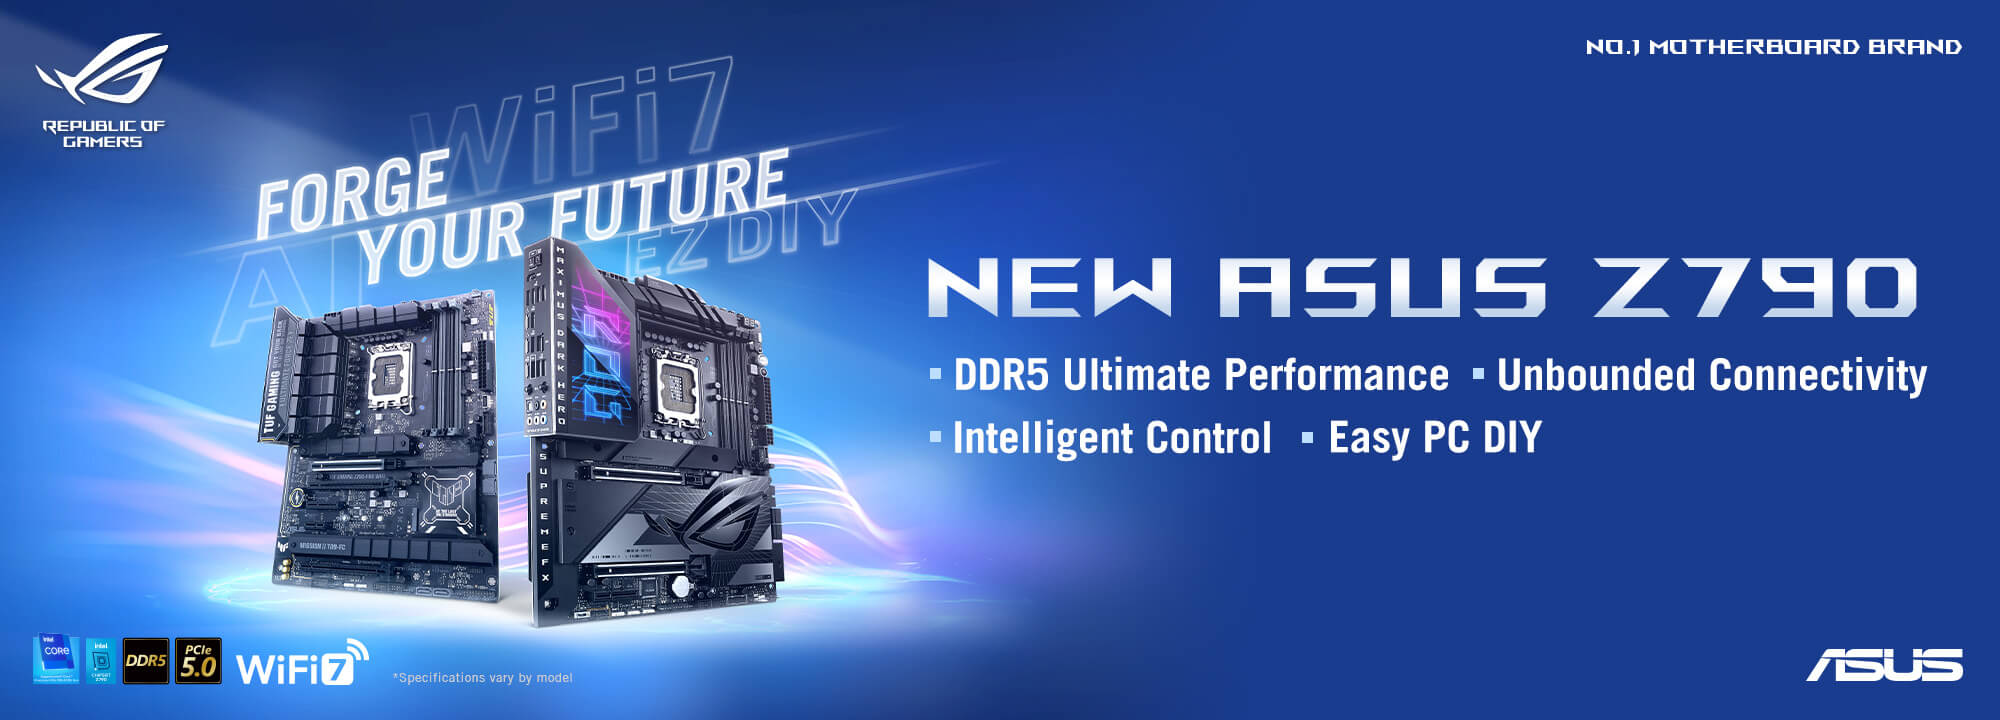 СТВОРЮЙТЕ МАЙБУТНЄ – НОВІ плати ASUS серії Z790 з високопродуктивною пам'яттю DDR5, сучасними інтерфейсами, інтелектуальним керуванням та фірмовими технологіями для ентузіастів ПК.